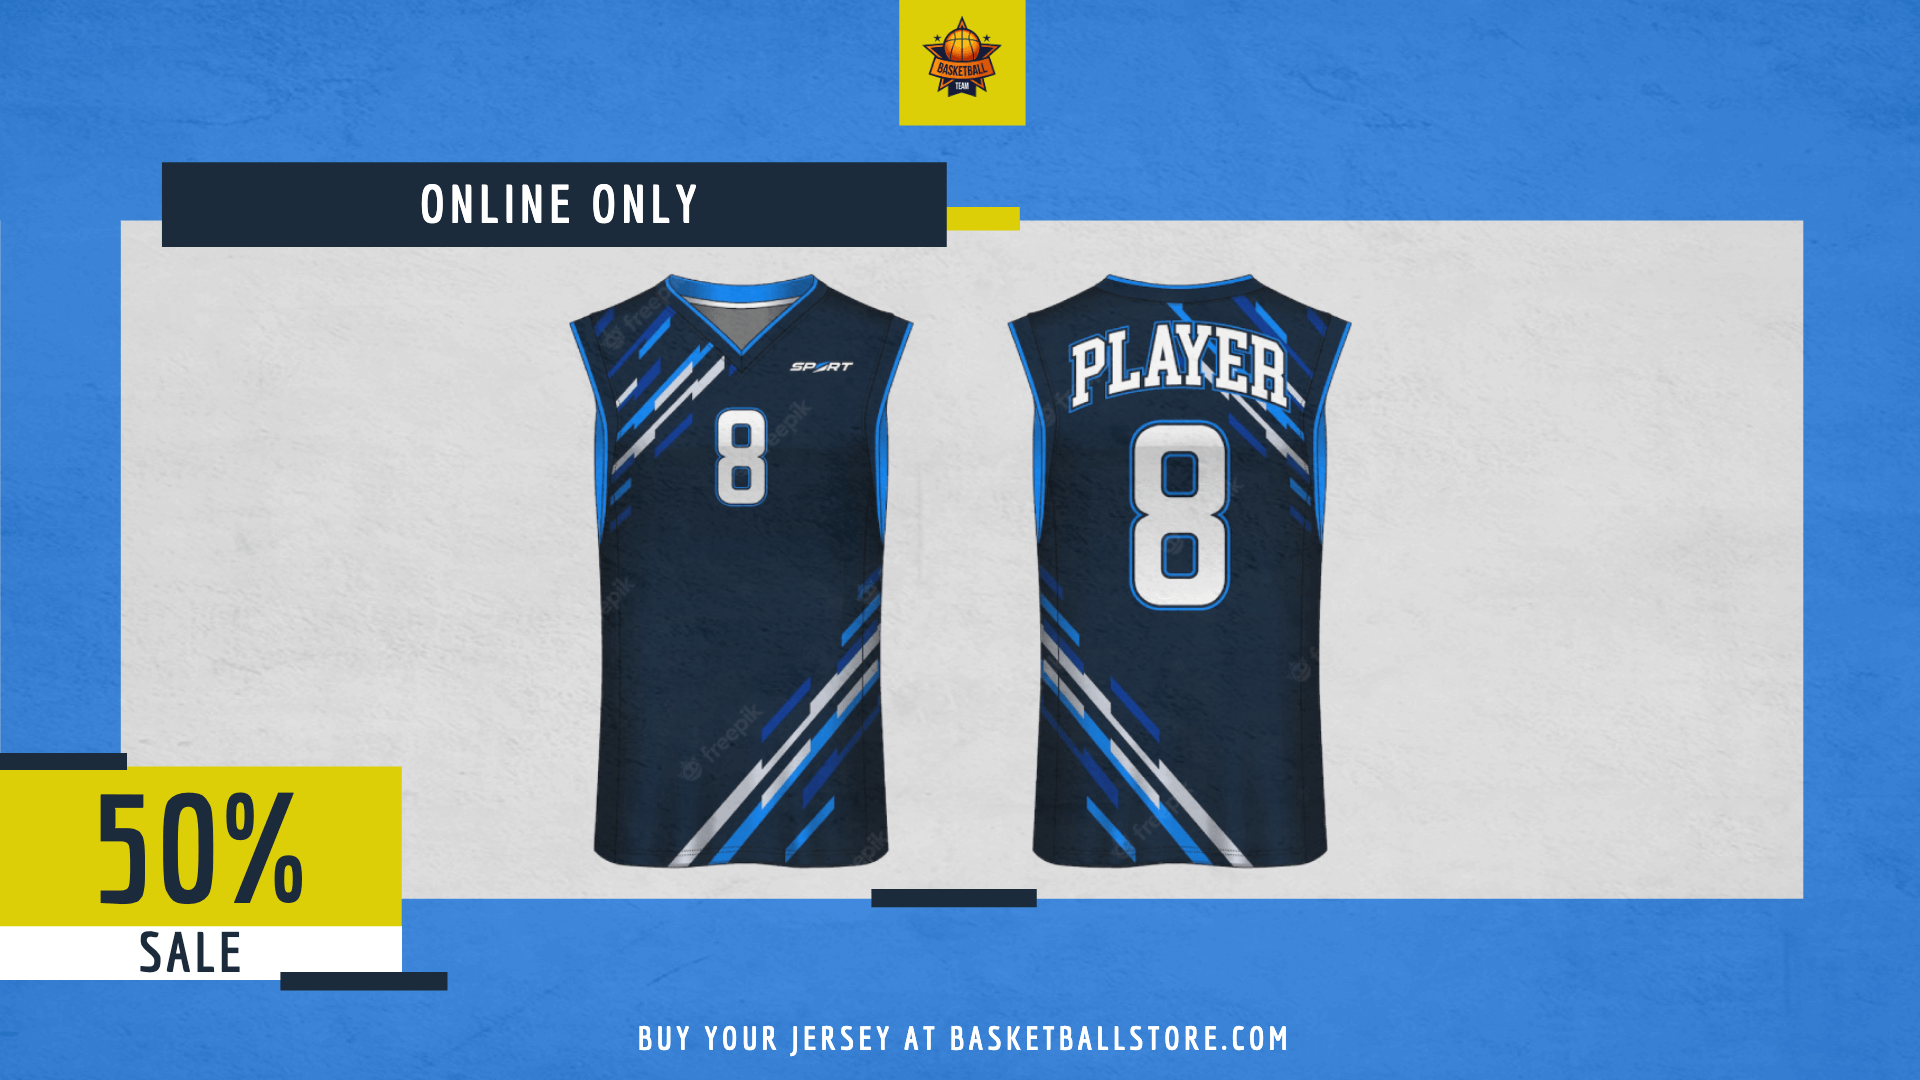 Basketball Team Online Sale Design L